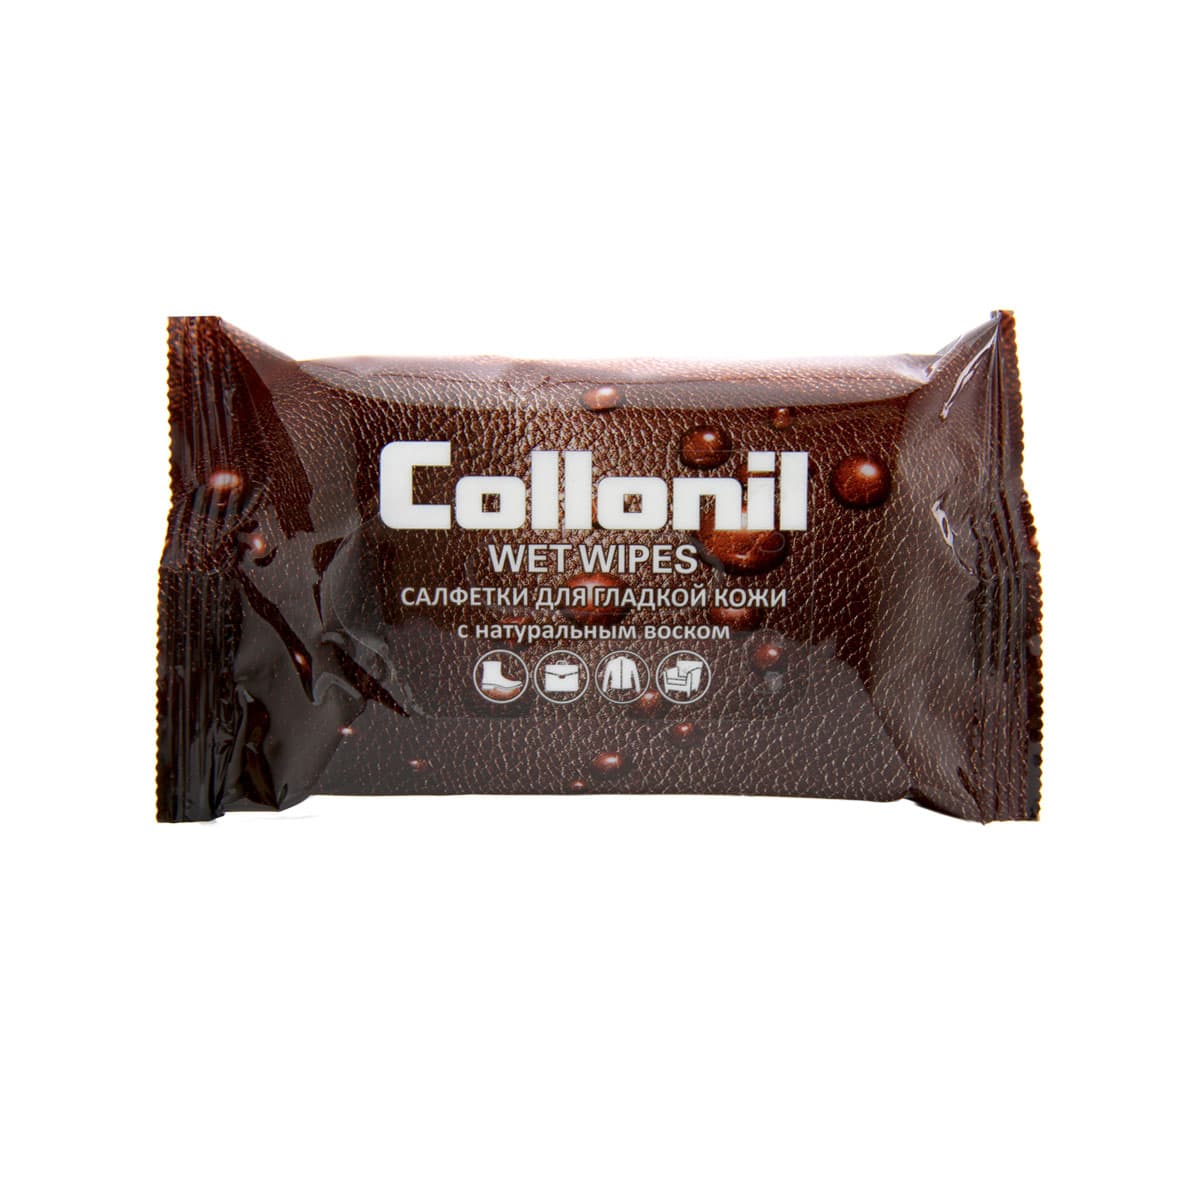 Влажные салфетки для гладкой кожи Collonil 15 шт влажные салфетки для лаковой кожи collonil